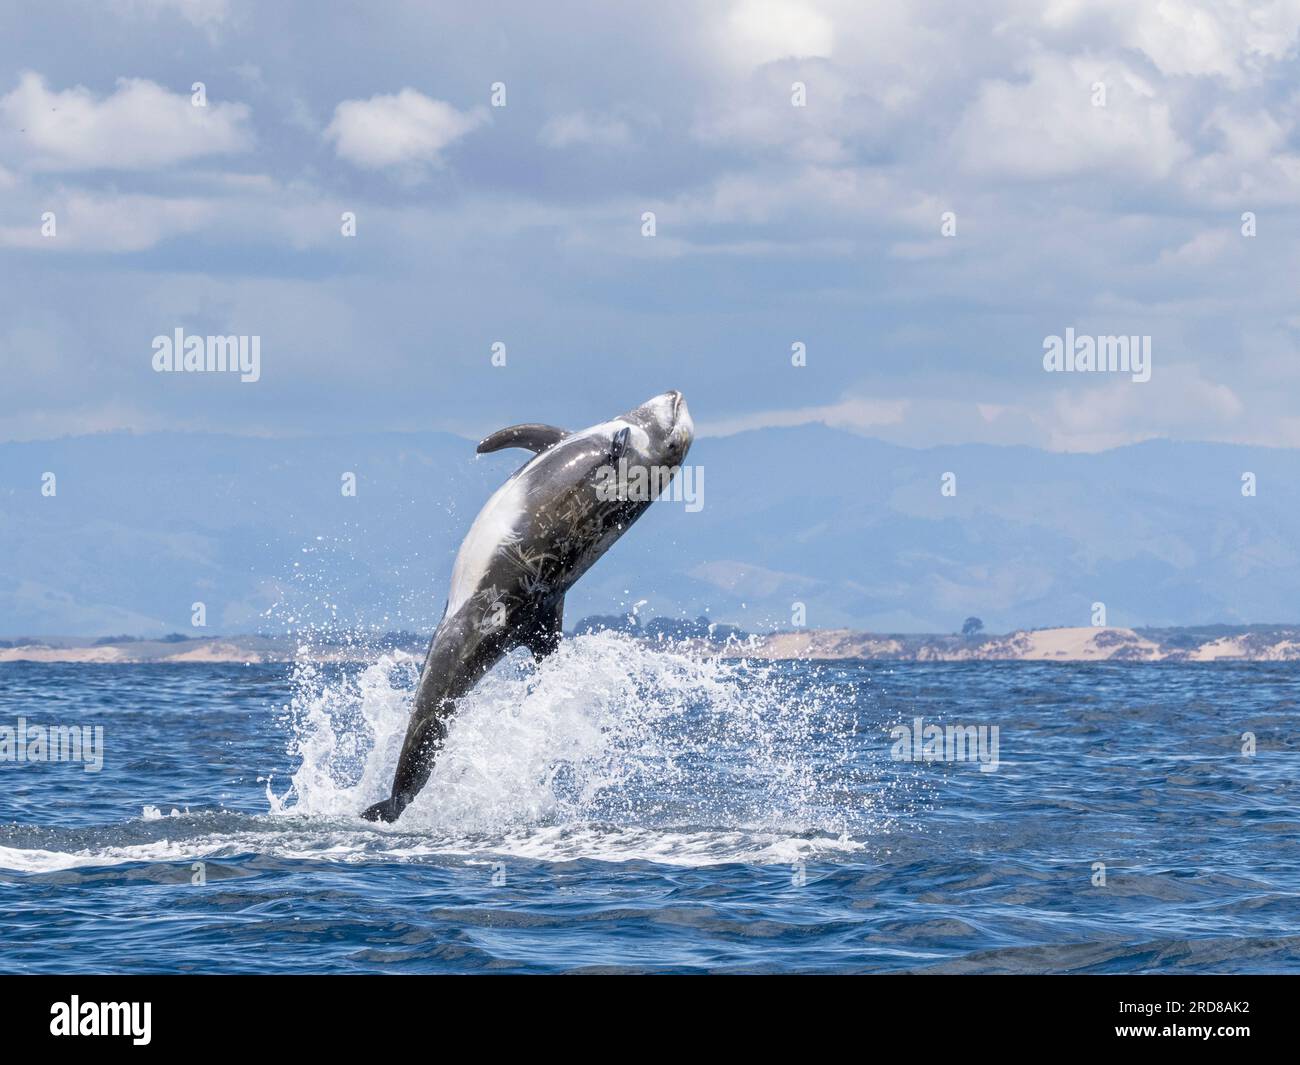 Dauphin adulte de Risso (Grampus griseus), sautant dans les airs dans le sanctuaire marin de Monterey Bay, Californie, États-Unis d'Amérique, Amérique du Nord Banque D'Images